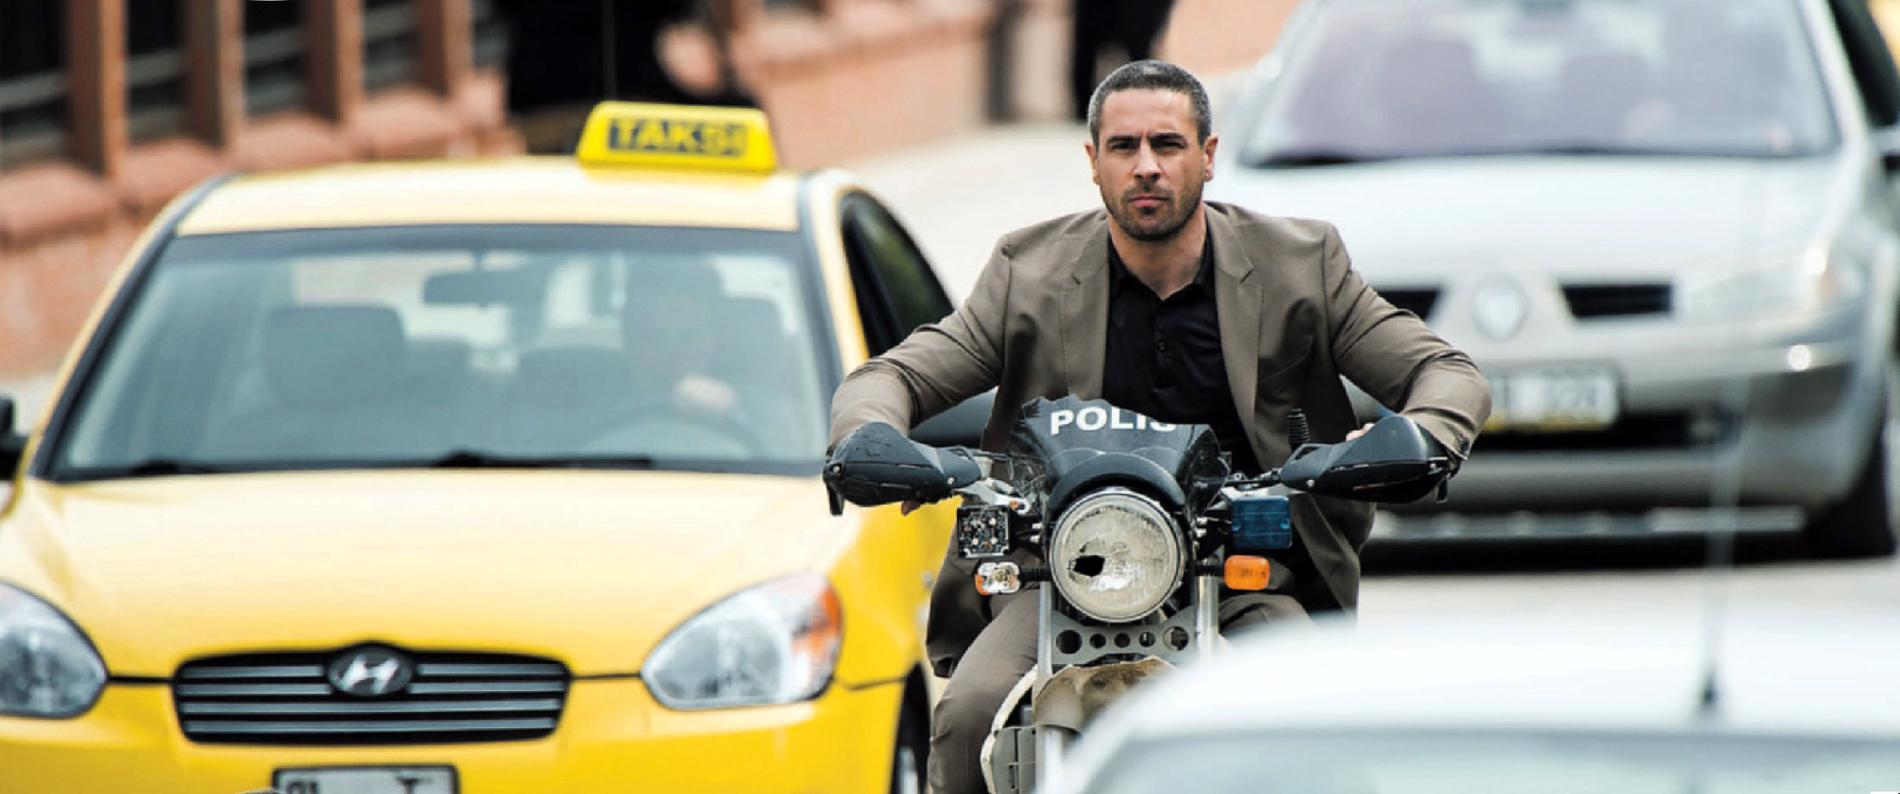 Ola Rapaces är van att figurera som filmskummis, här som Patrice James Bonds nemesis på de turkiska gatorna i "Skyfall".